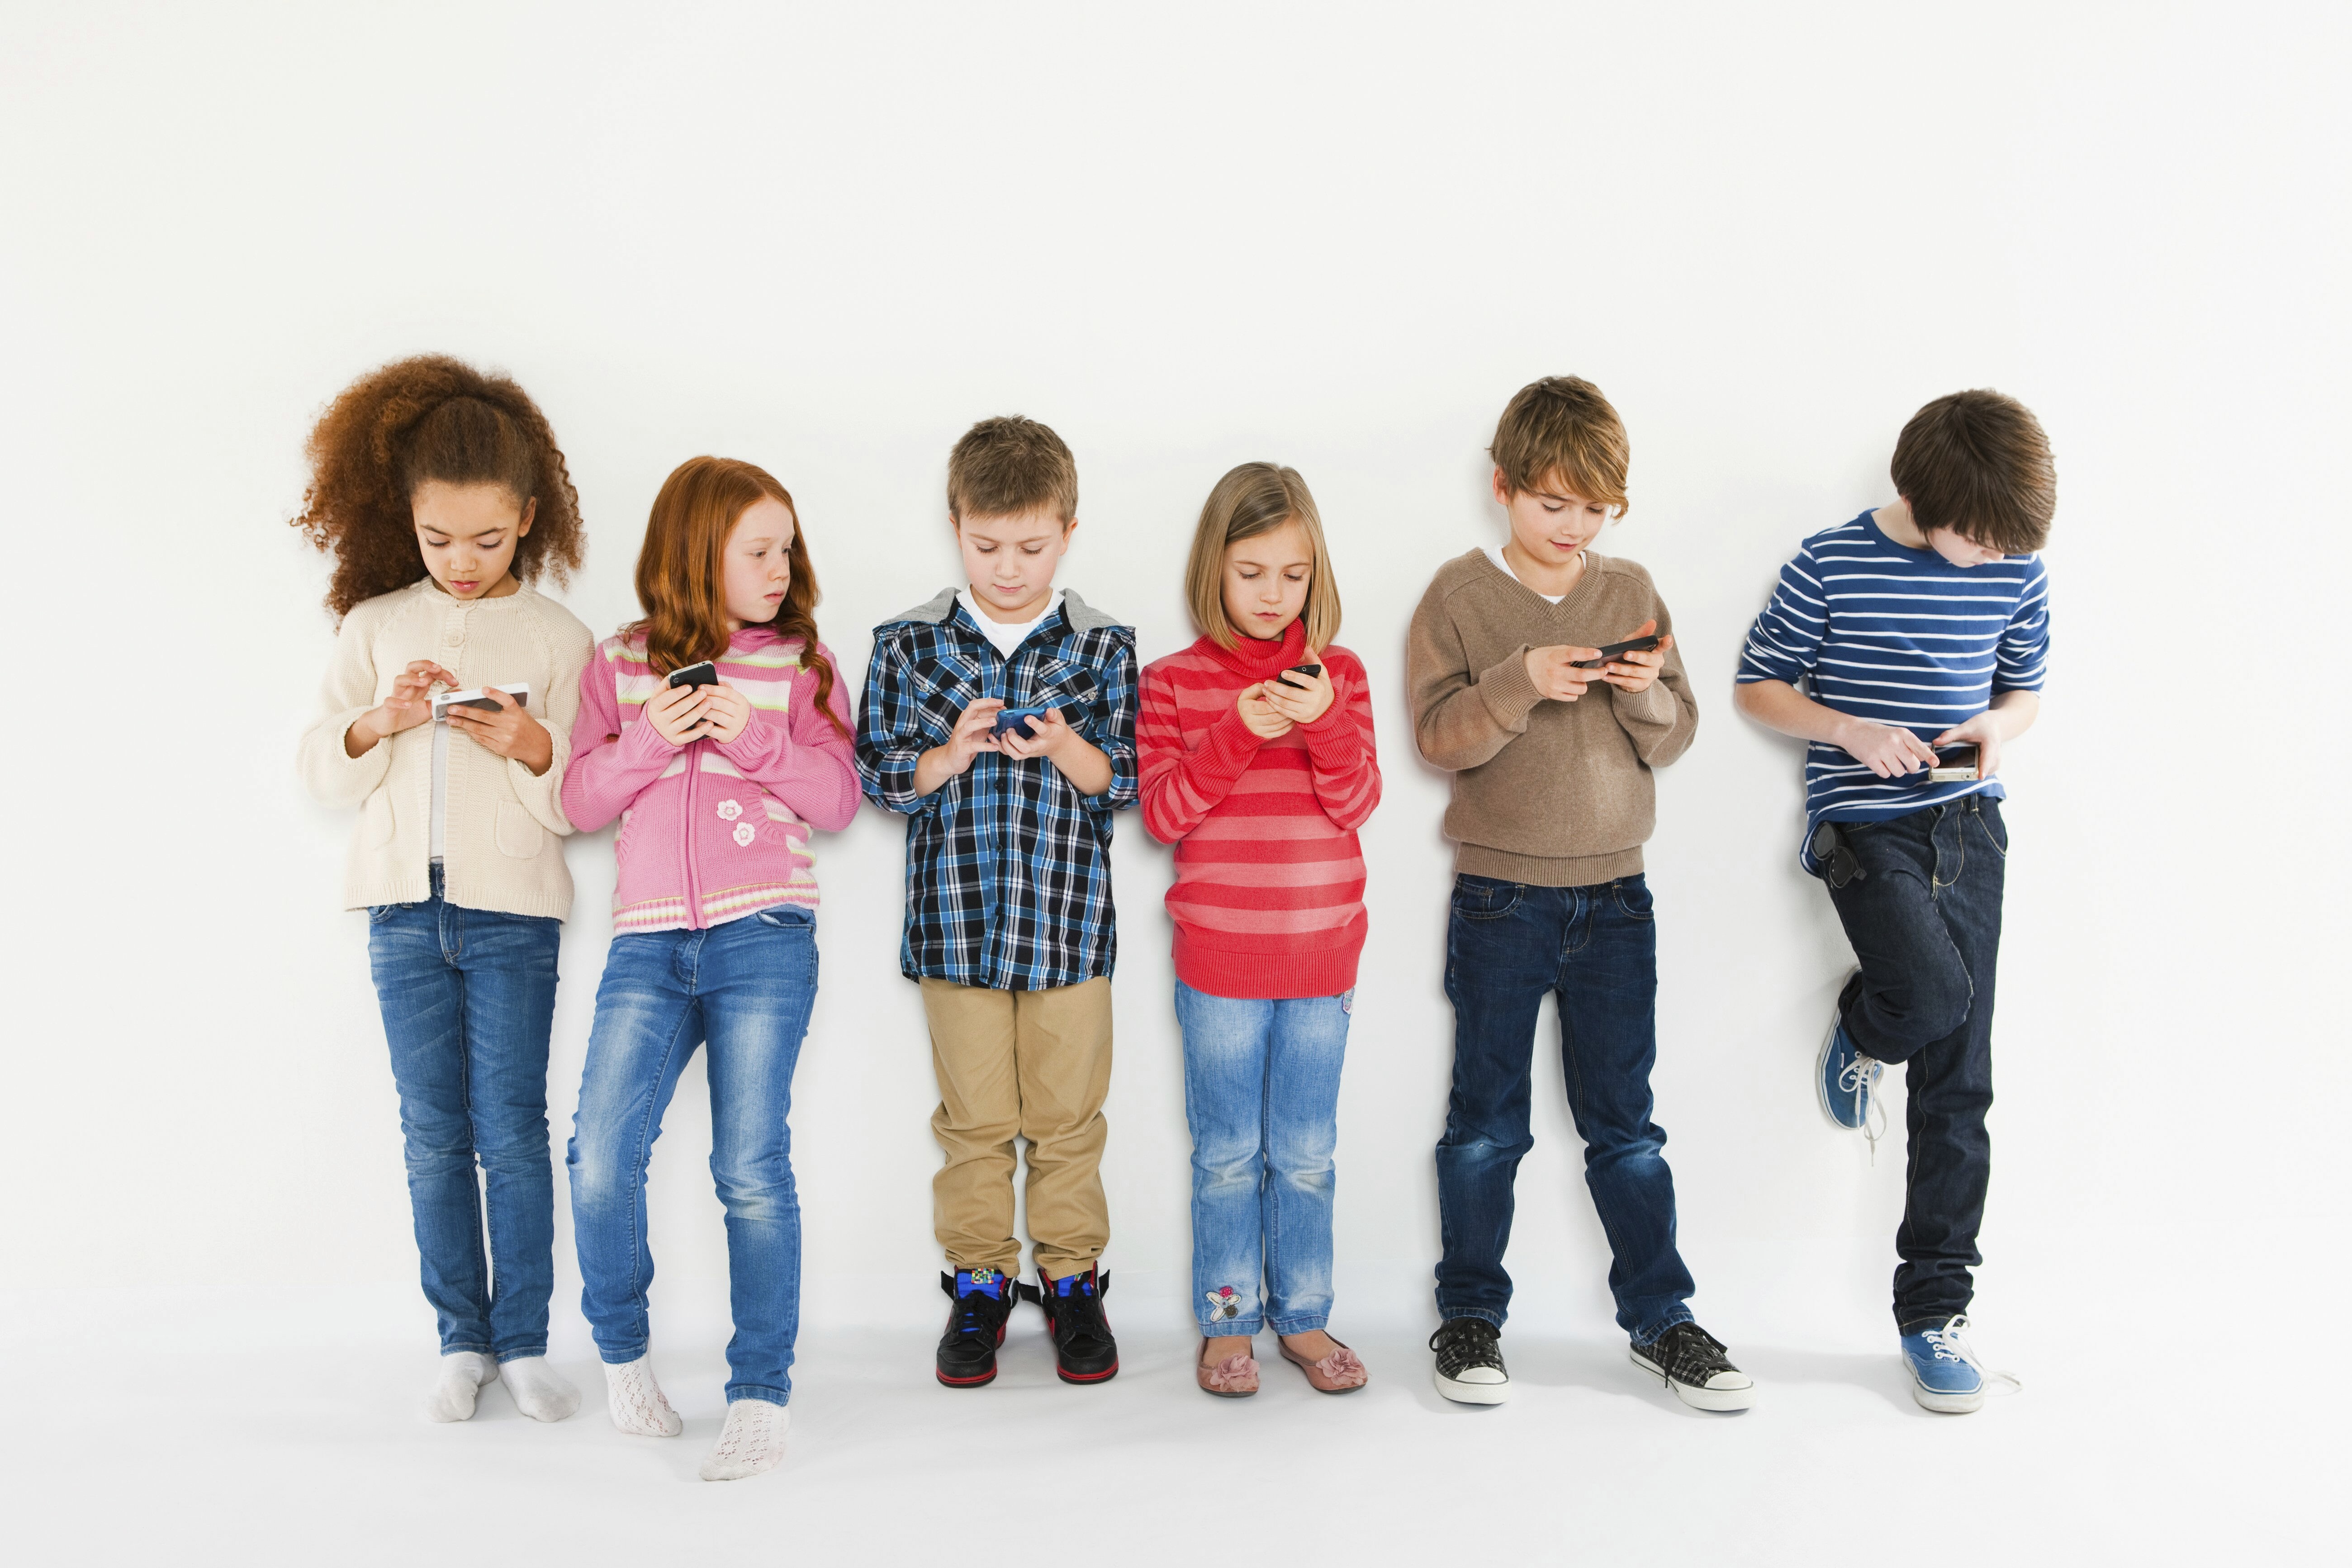 Sechs Kinder stehen nebeneinander und spielen mit ihren Smartphones.